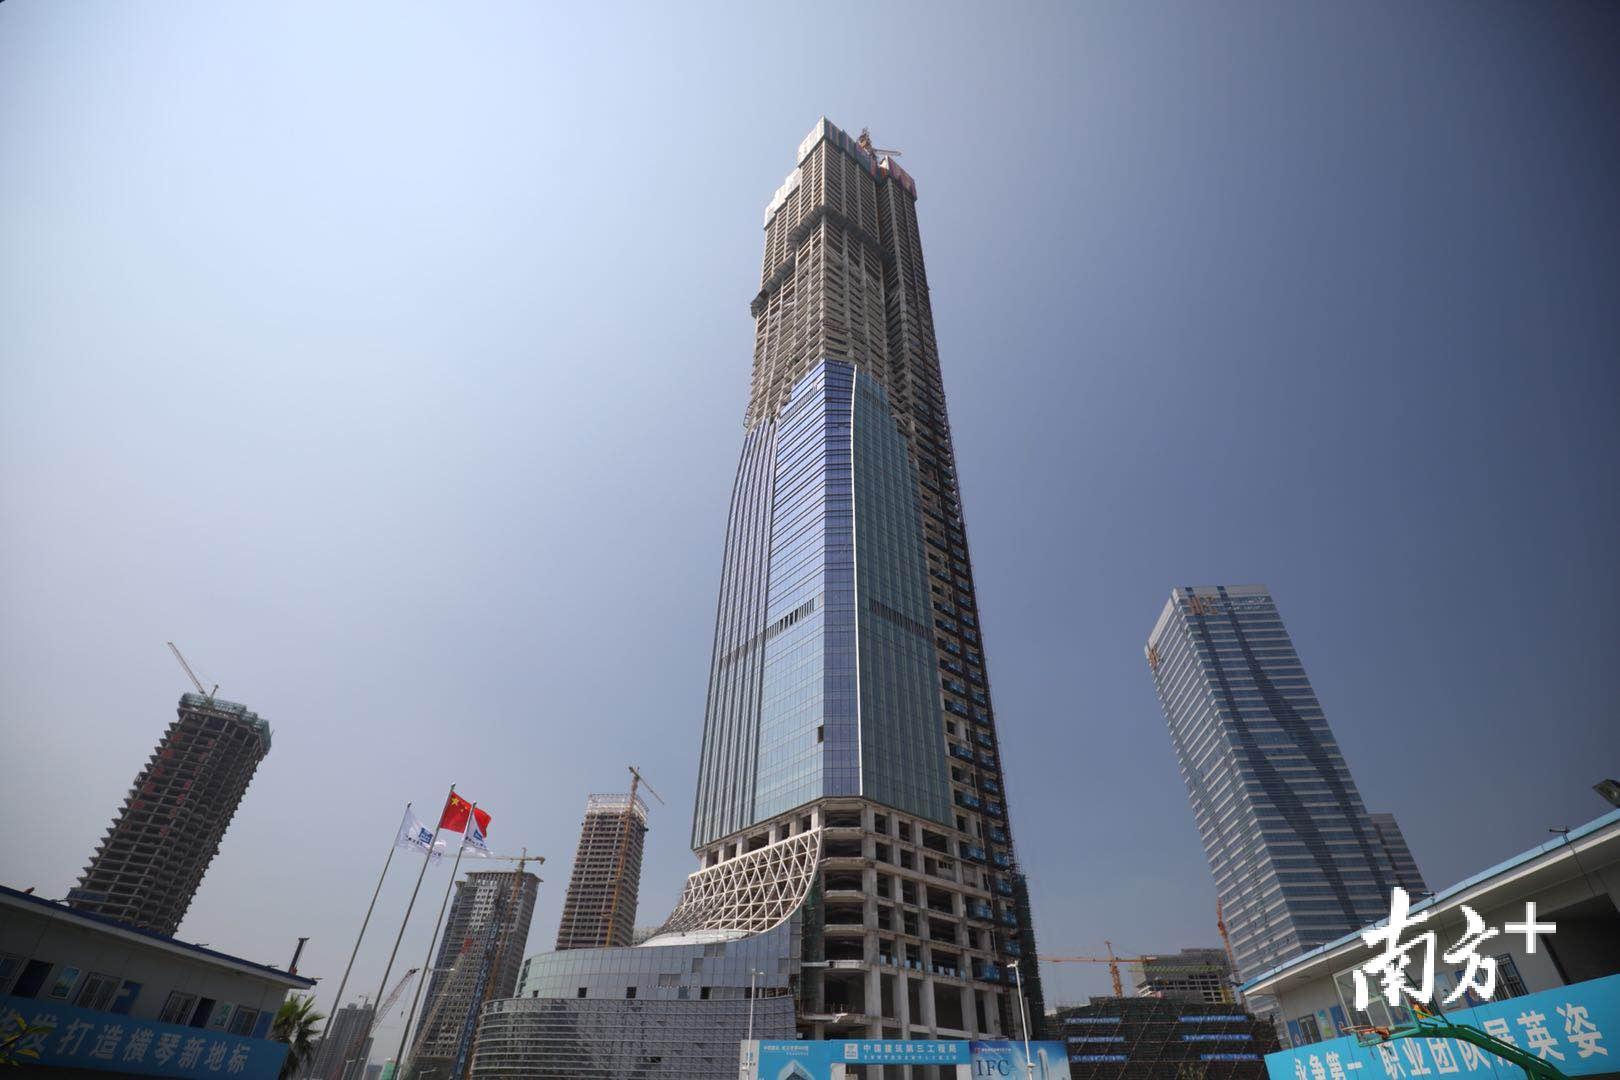 珠海在建高楼体封顶,横琴国际金融中心明年1月